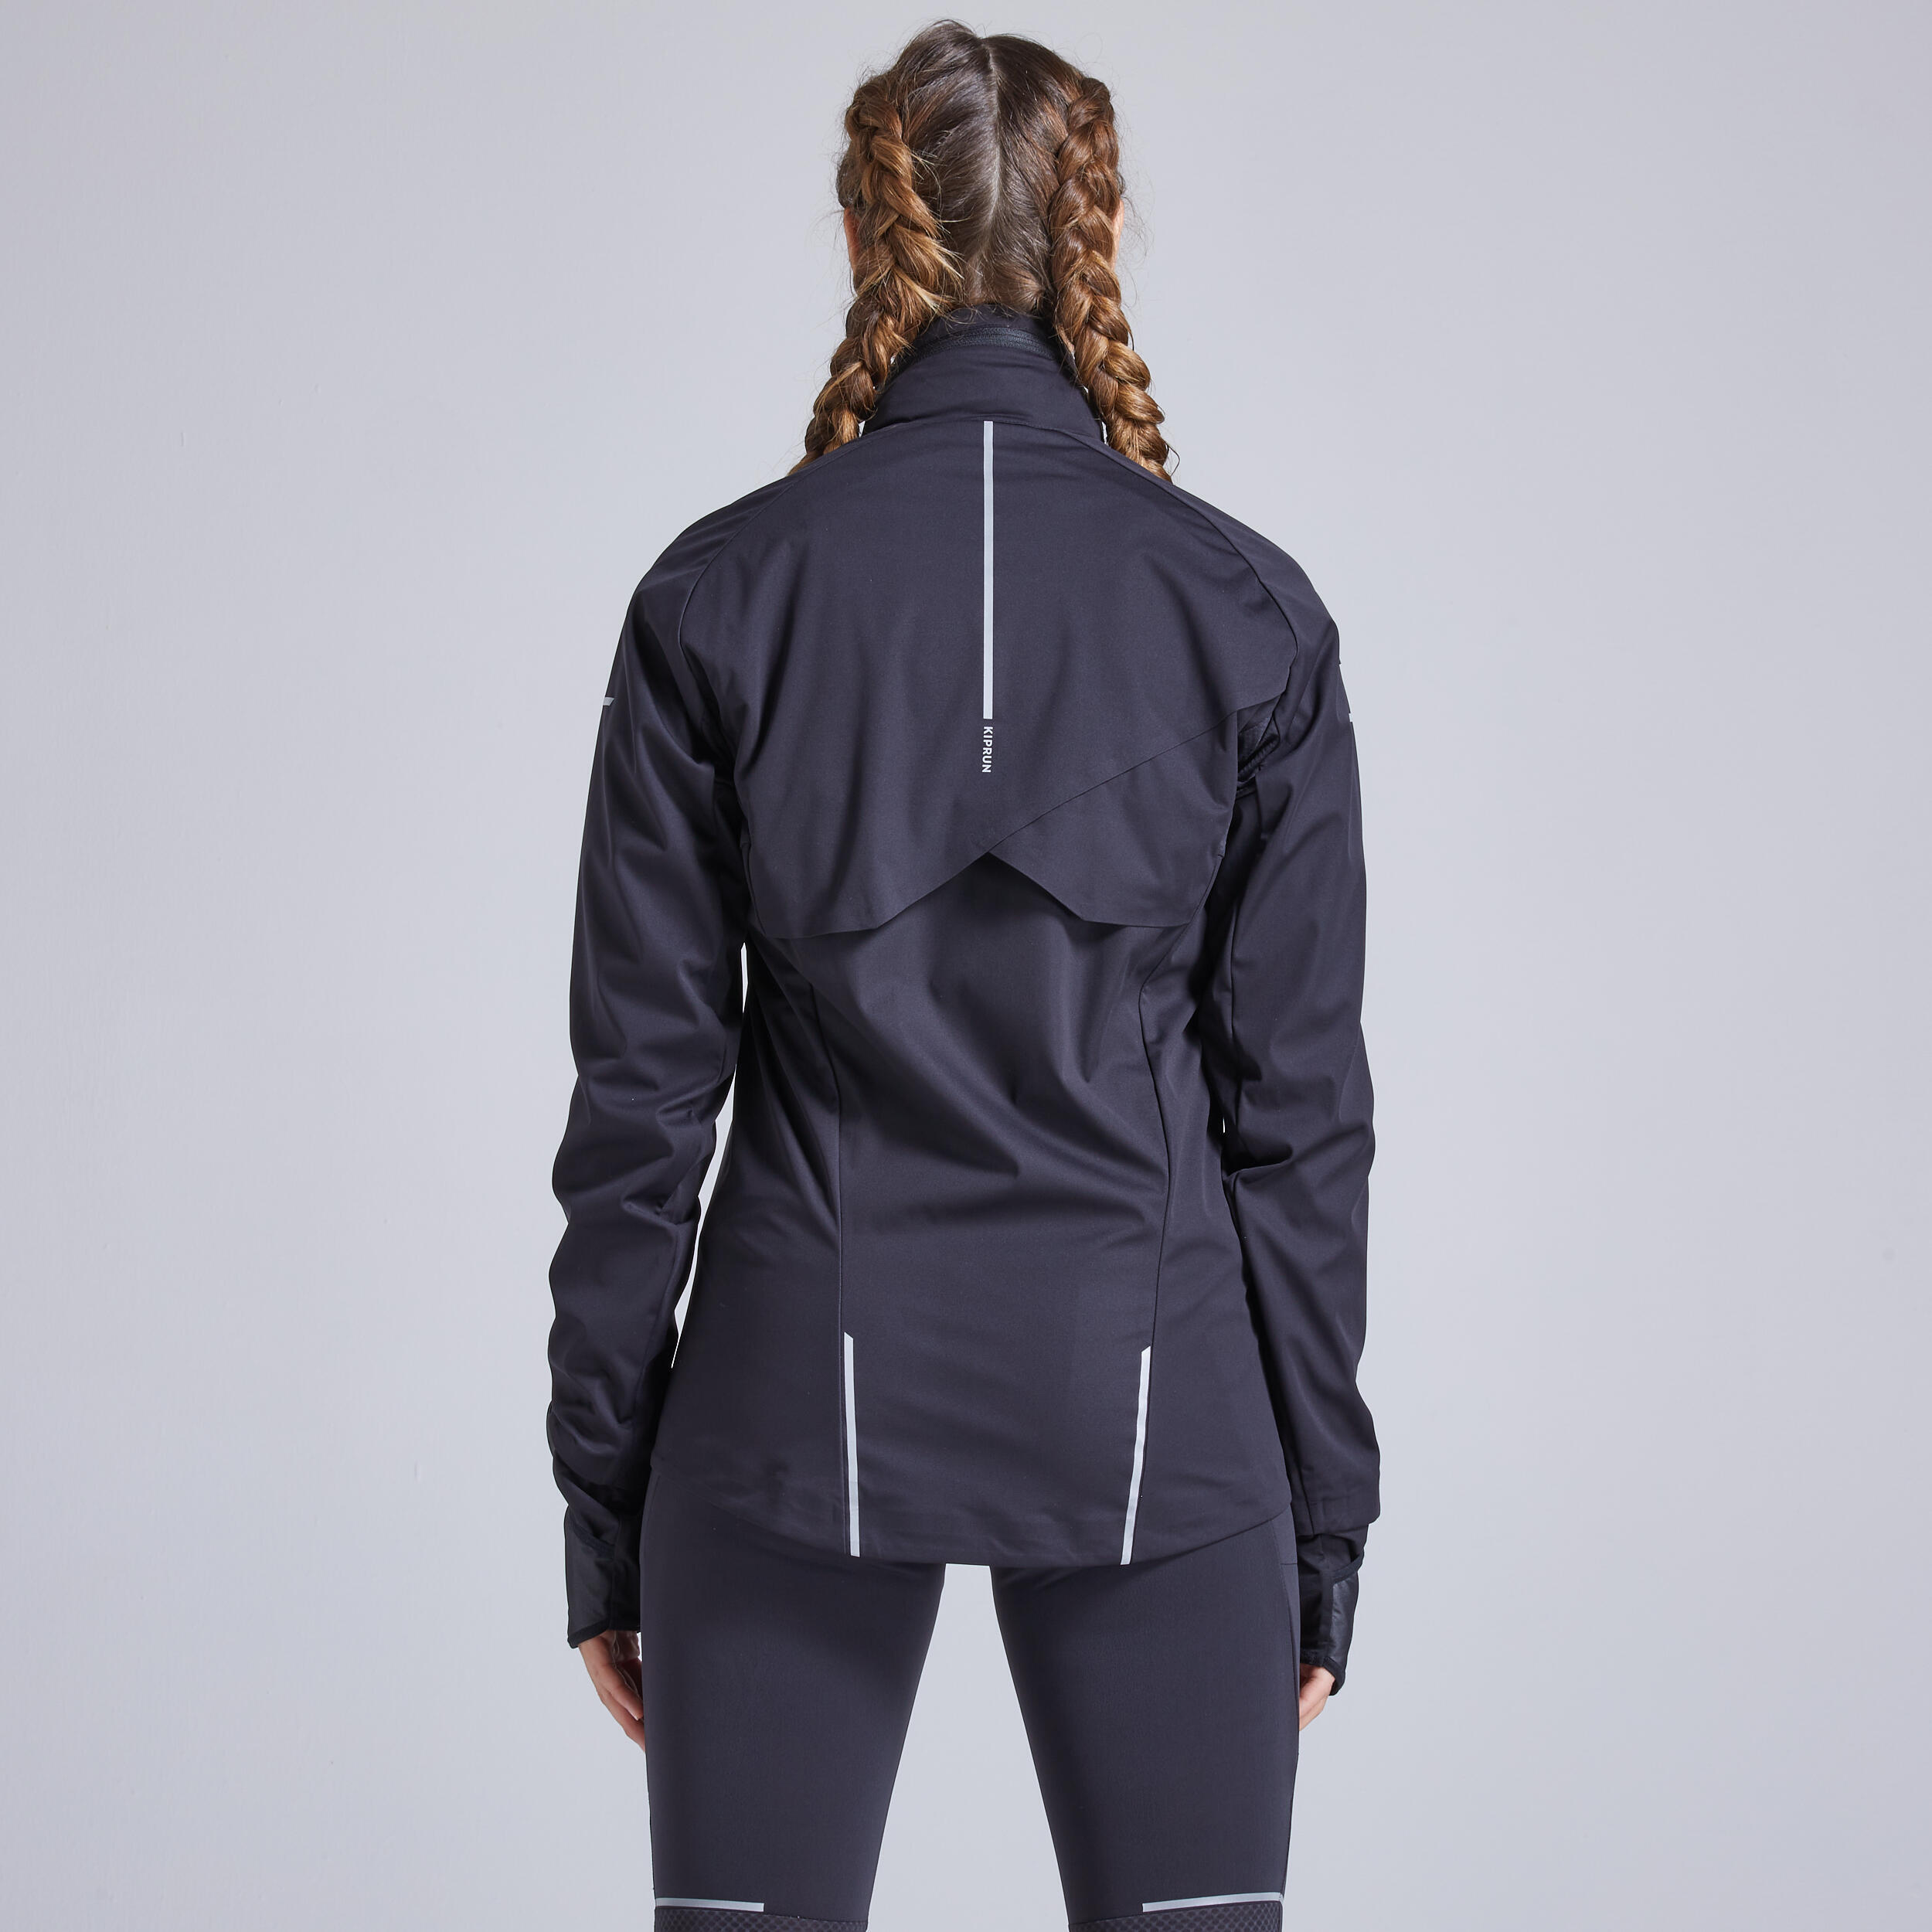 Warm Regul Women's Running Water Repellent Windproof Jacket - Black 2/12